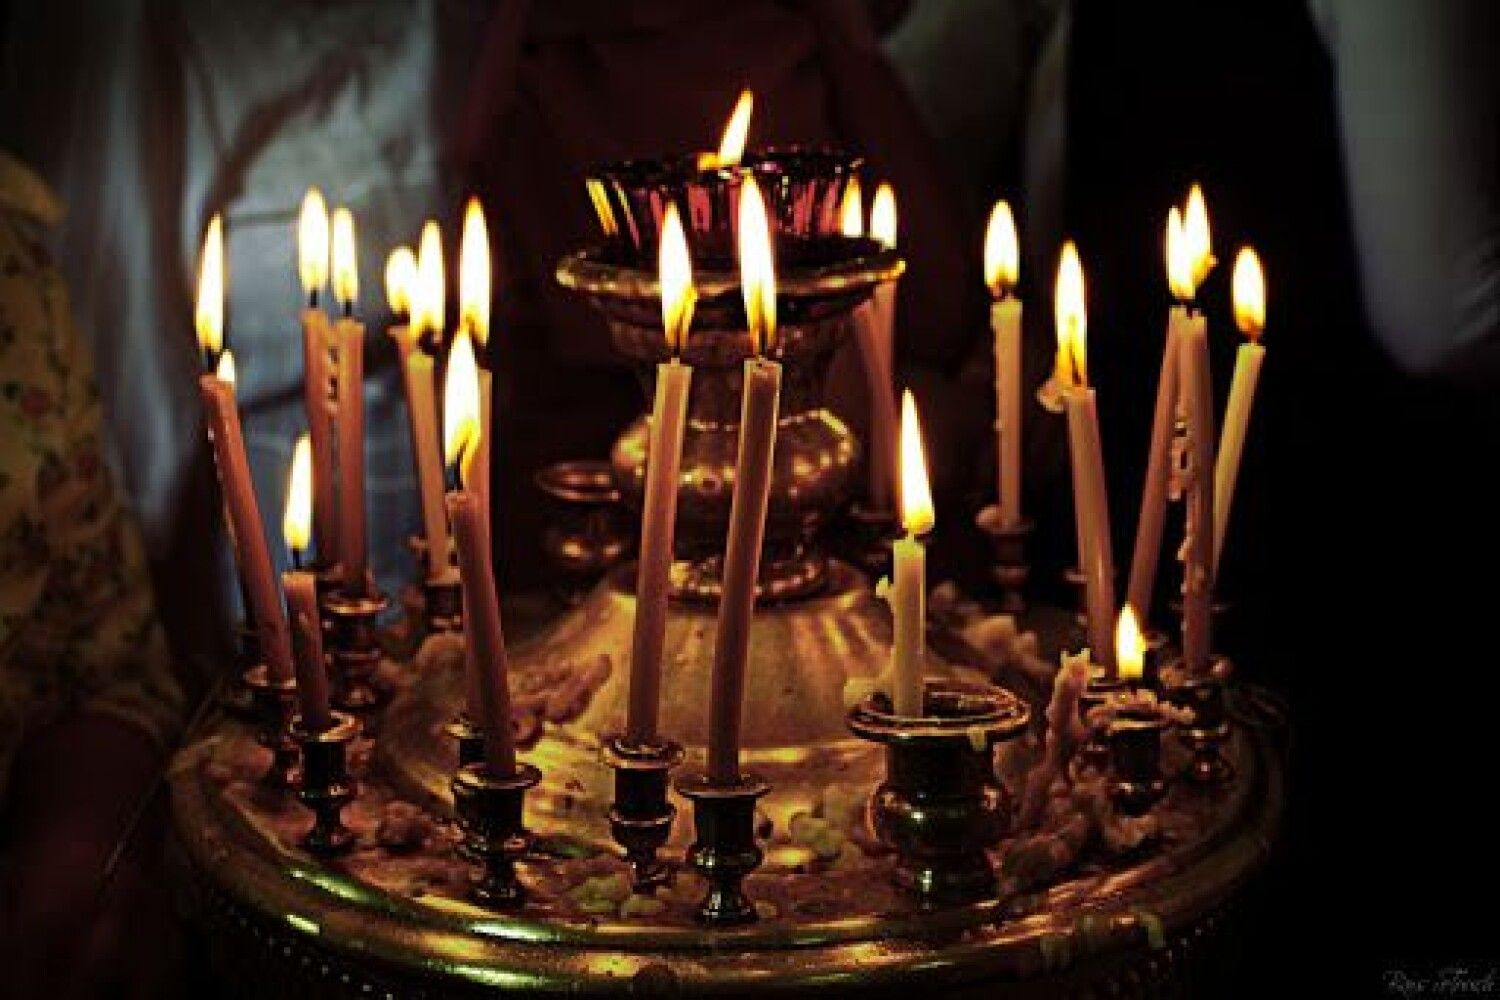 В церкви горят свечи. Церковные свечи. Свечка в церкви. Свечи на подсвечнике в храме. Торт с церковными свечами.